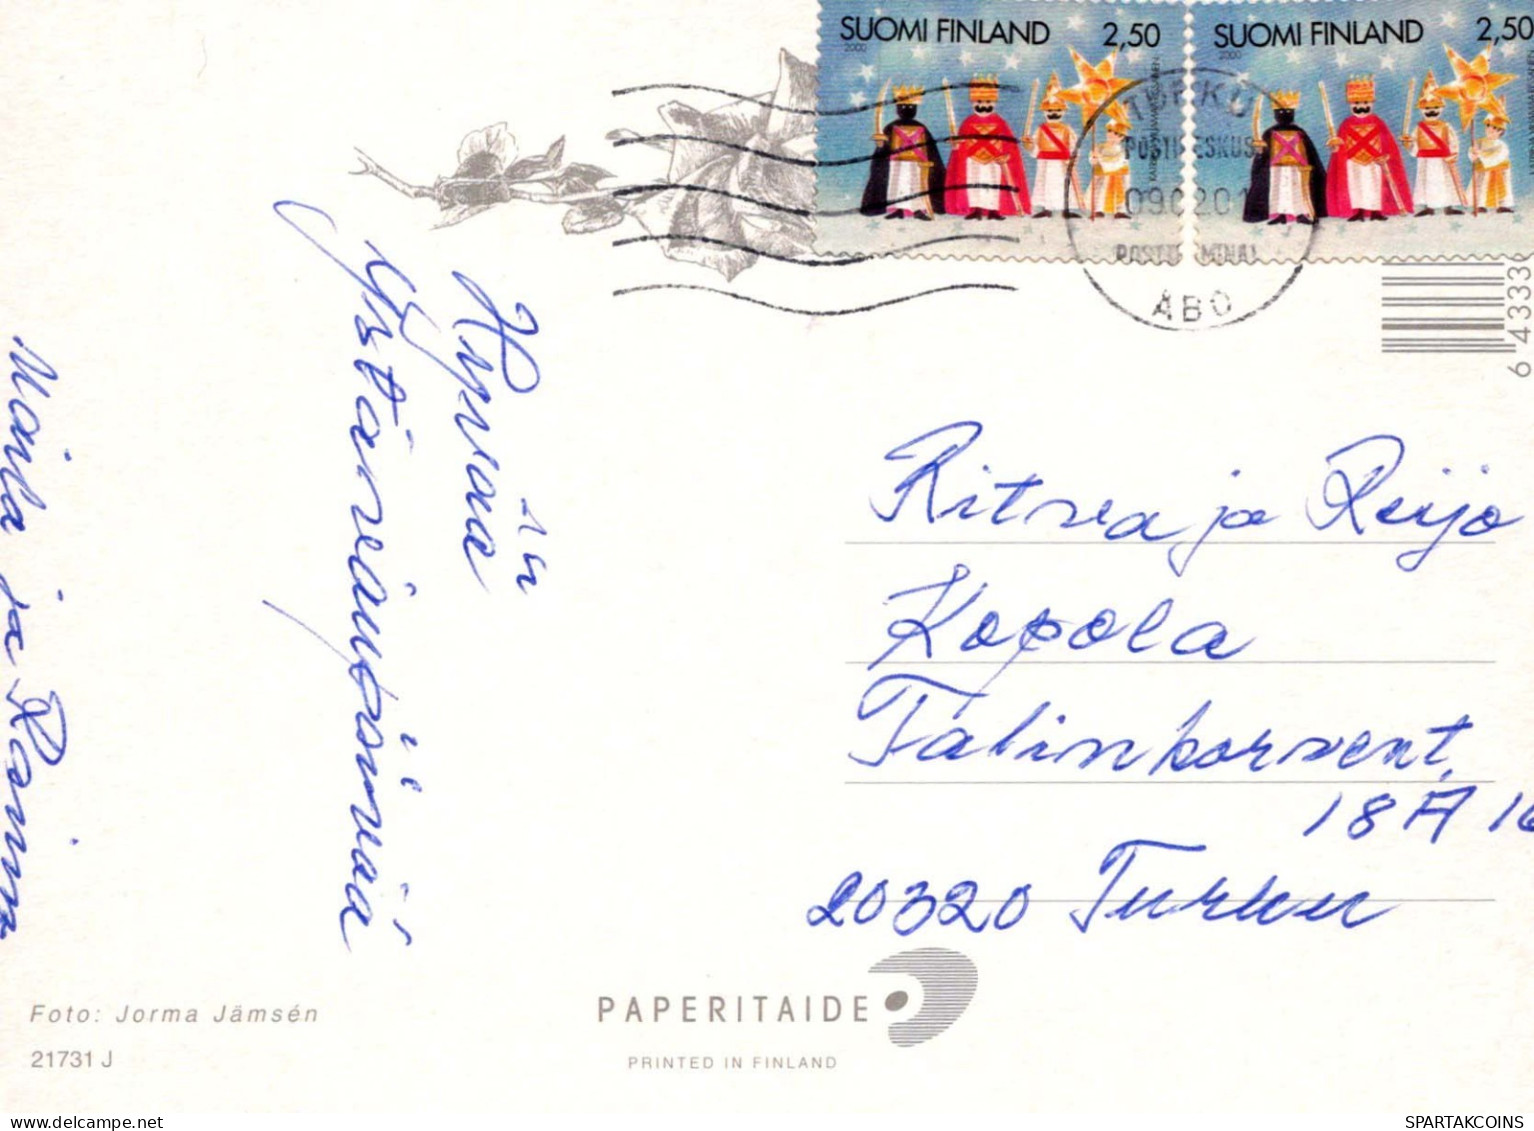 FLOWERS Vintage Postcard CPSM #PBZ129.GB - Fleurs